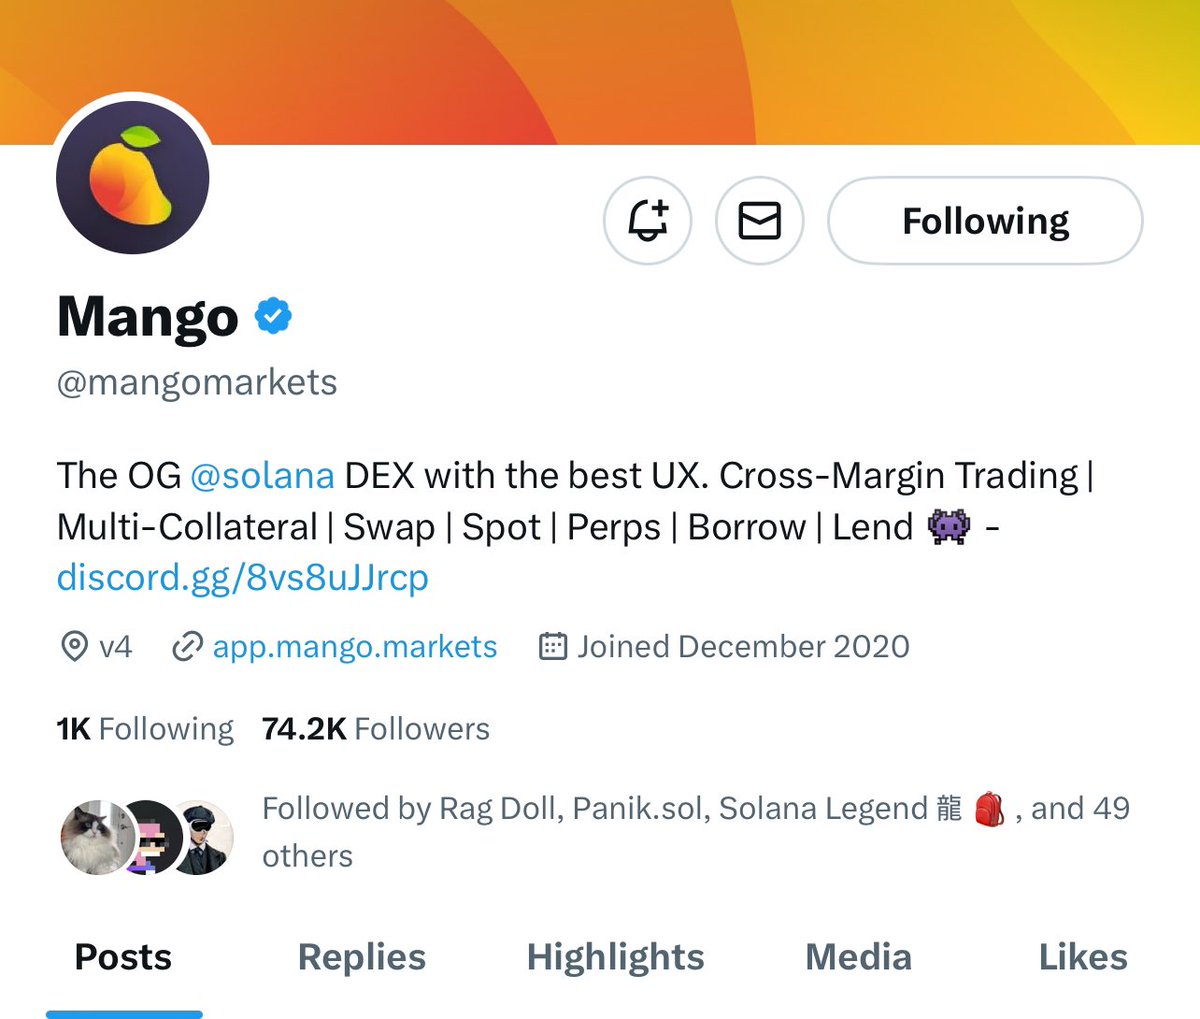 I hear @mangomarkets has a memecoin $mango